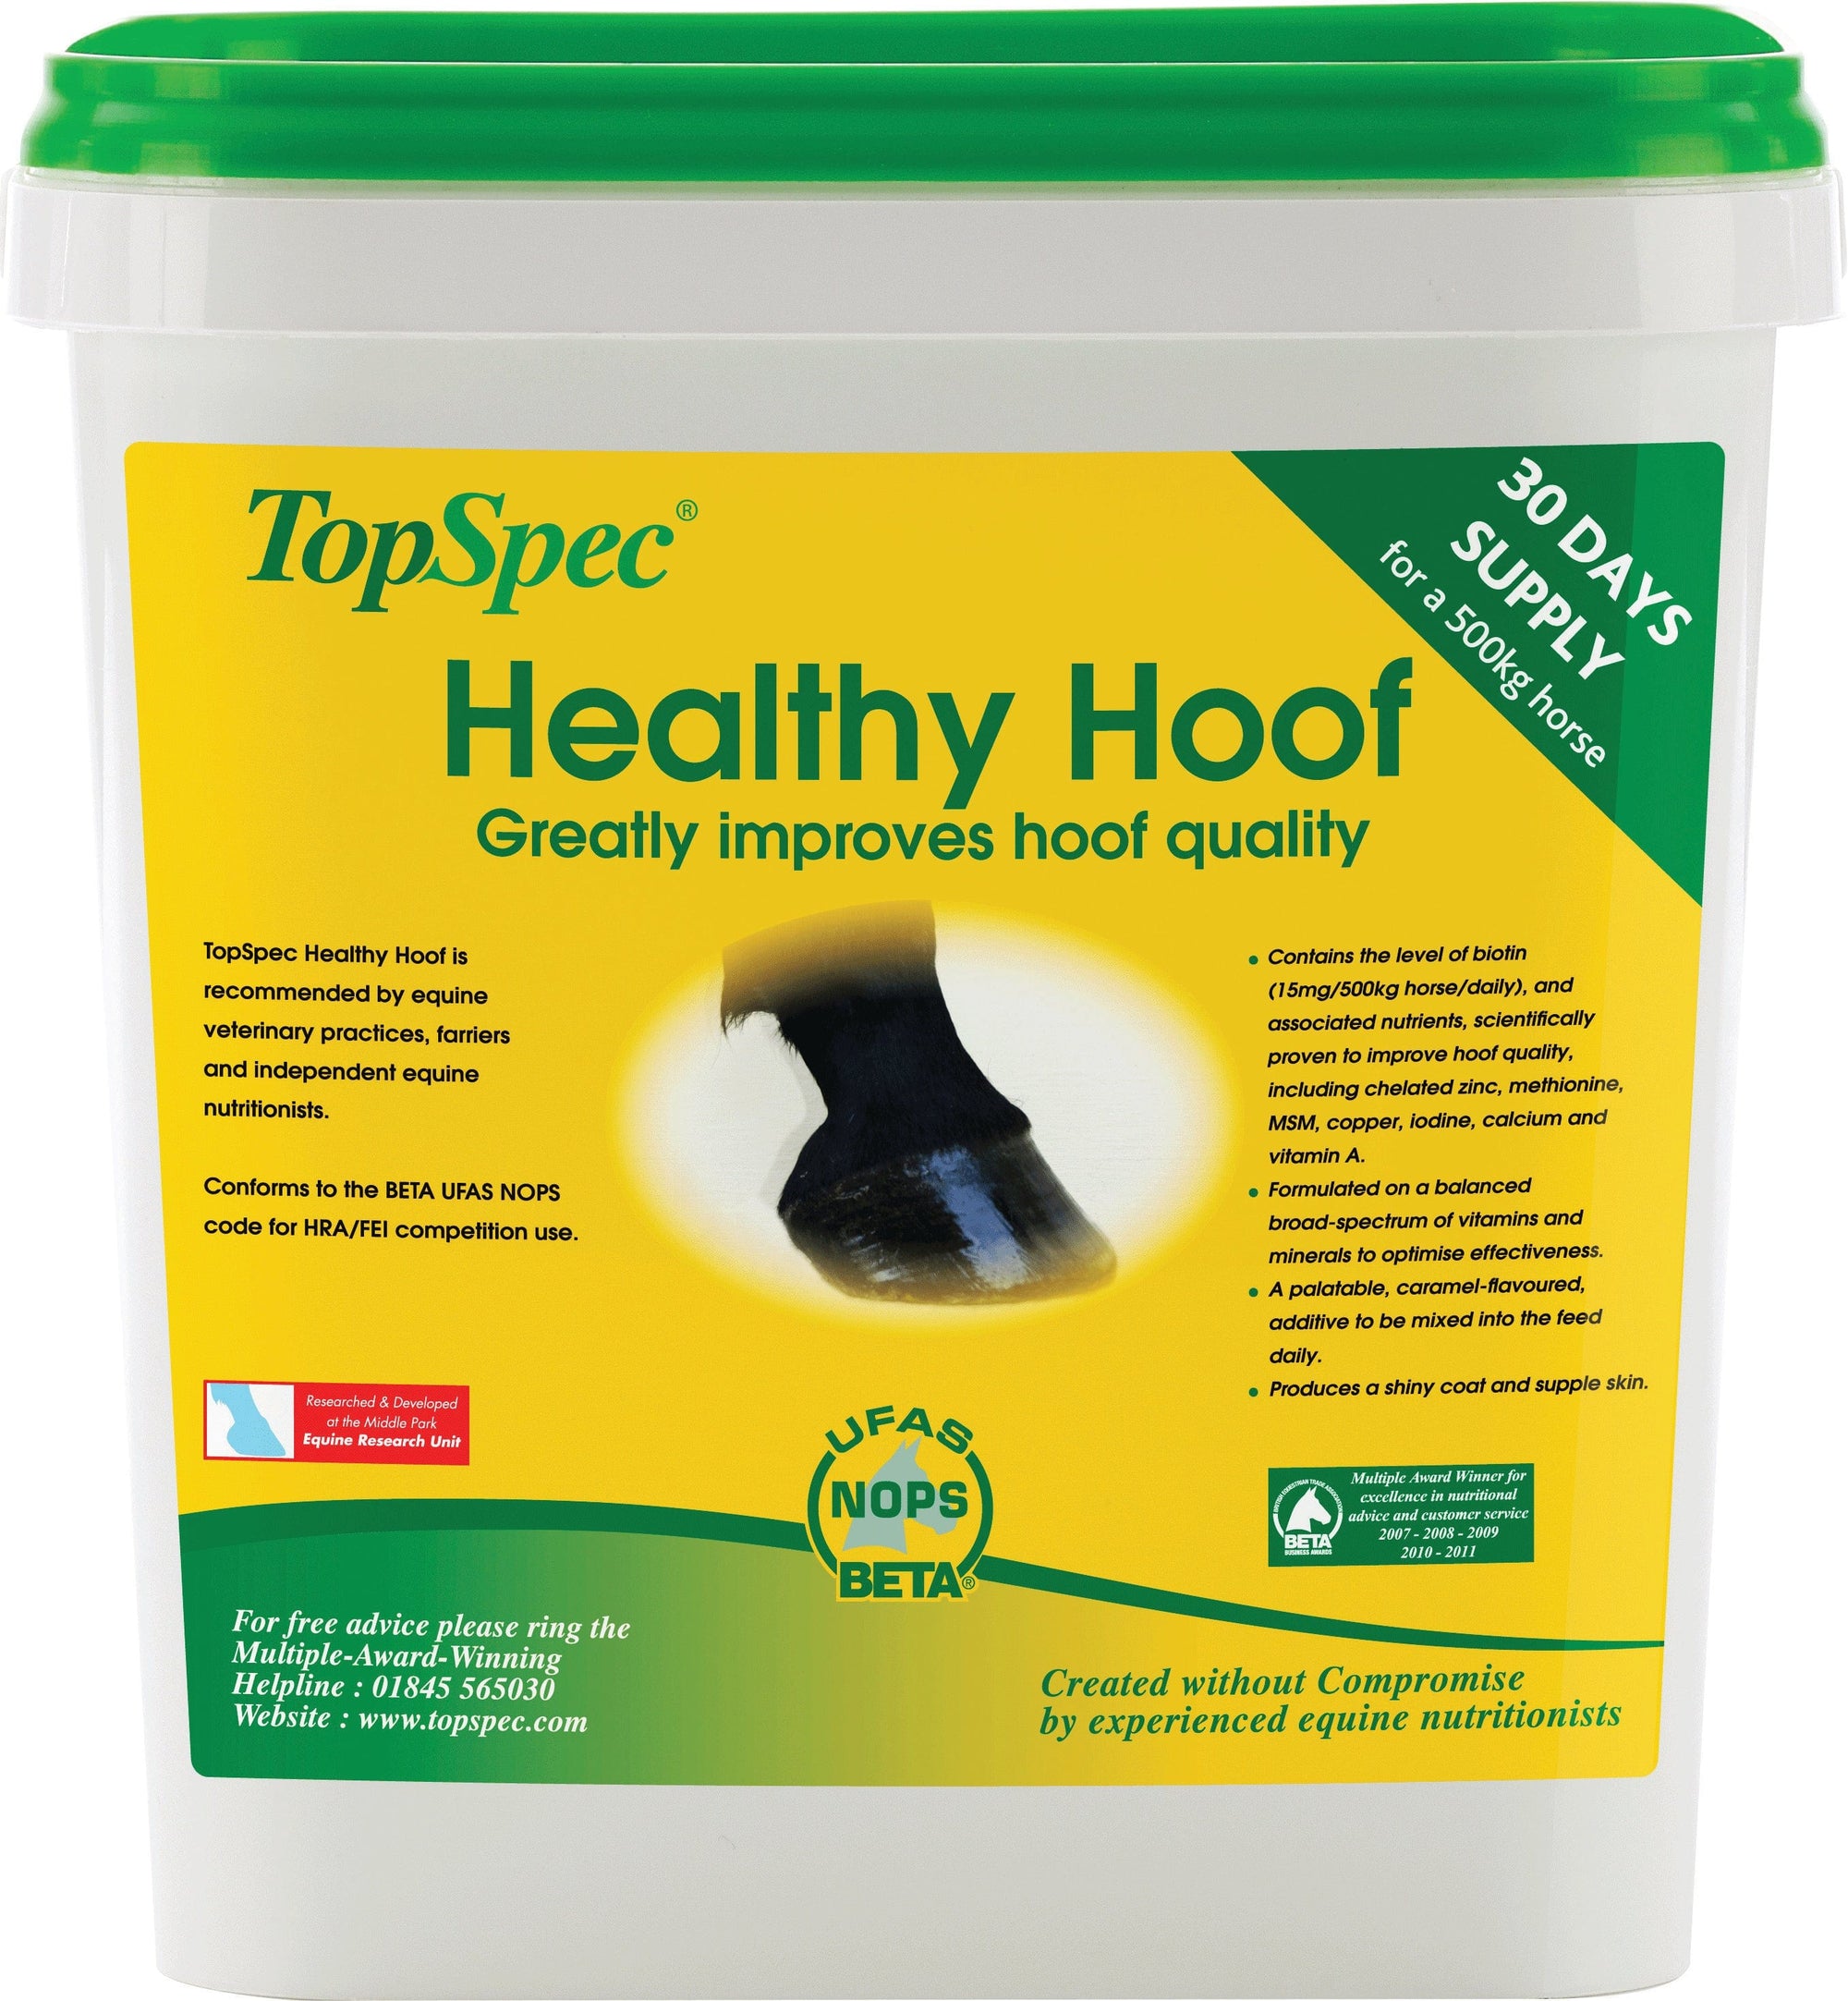 Topspec healthy hoof